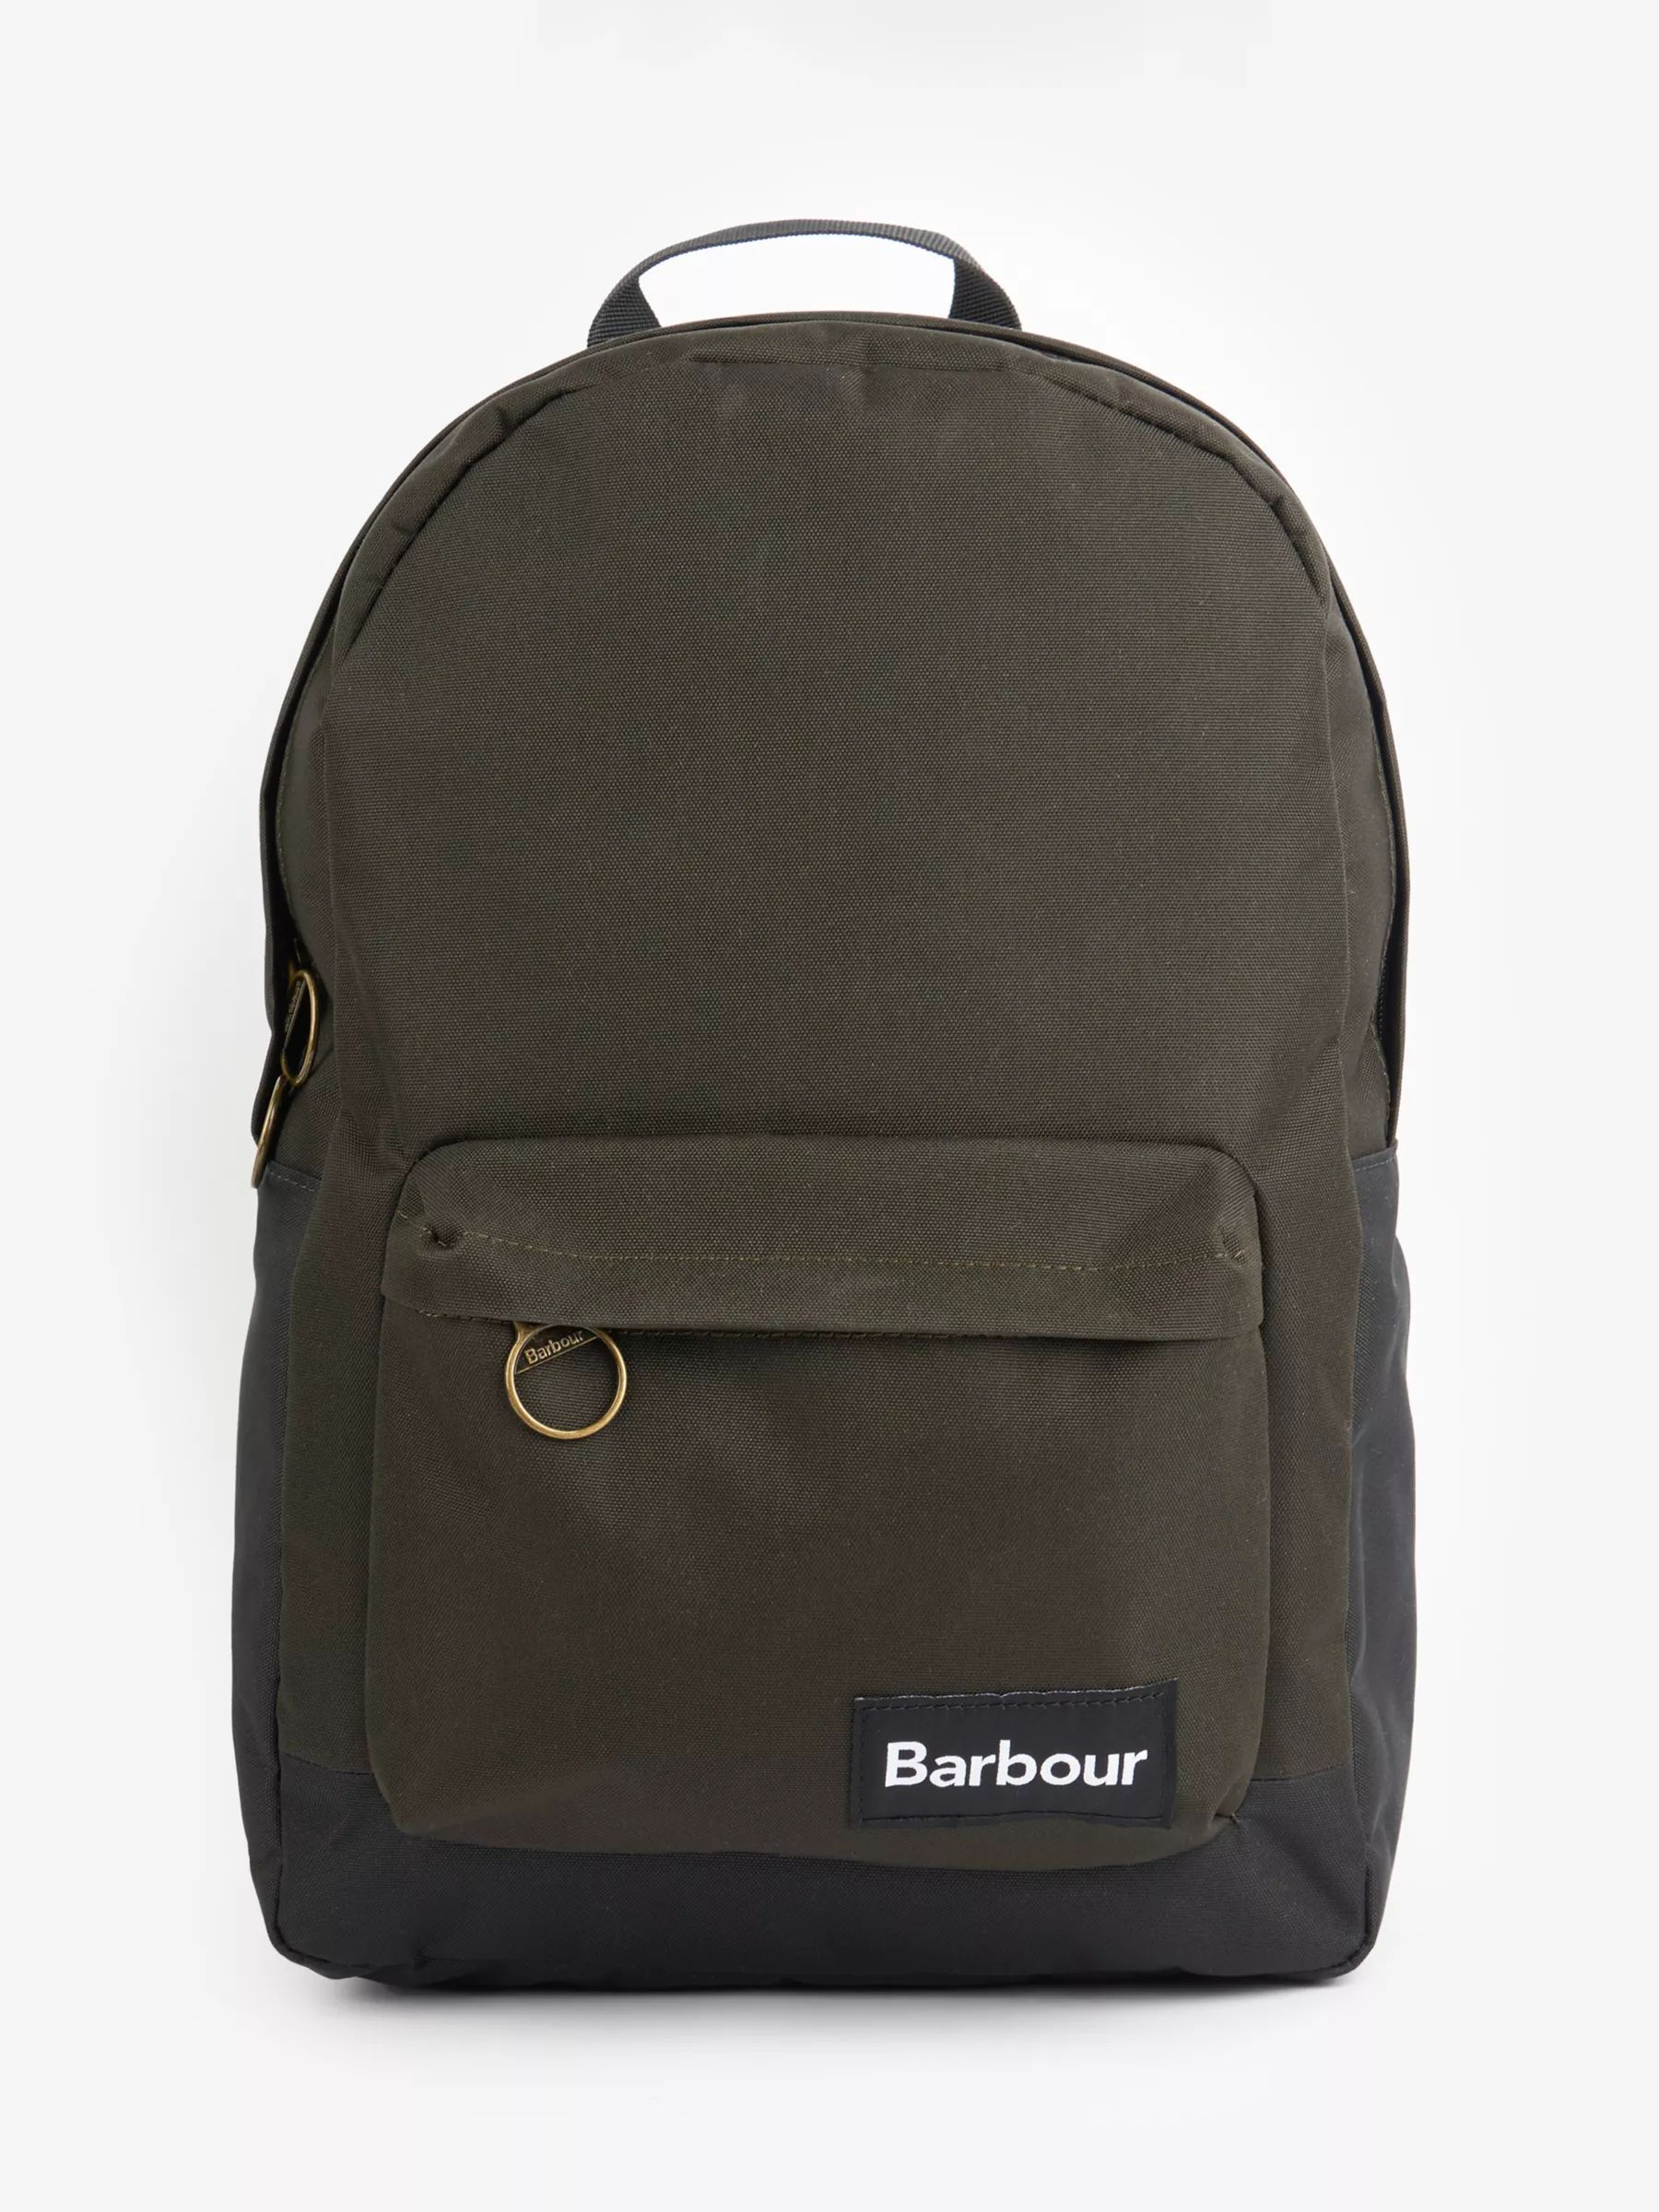 Barbour Highfield Canvas Backpack, Olive | John Lewis (UK)